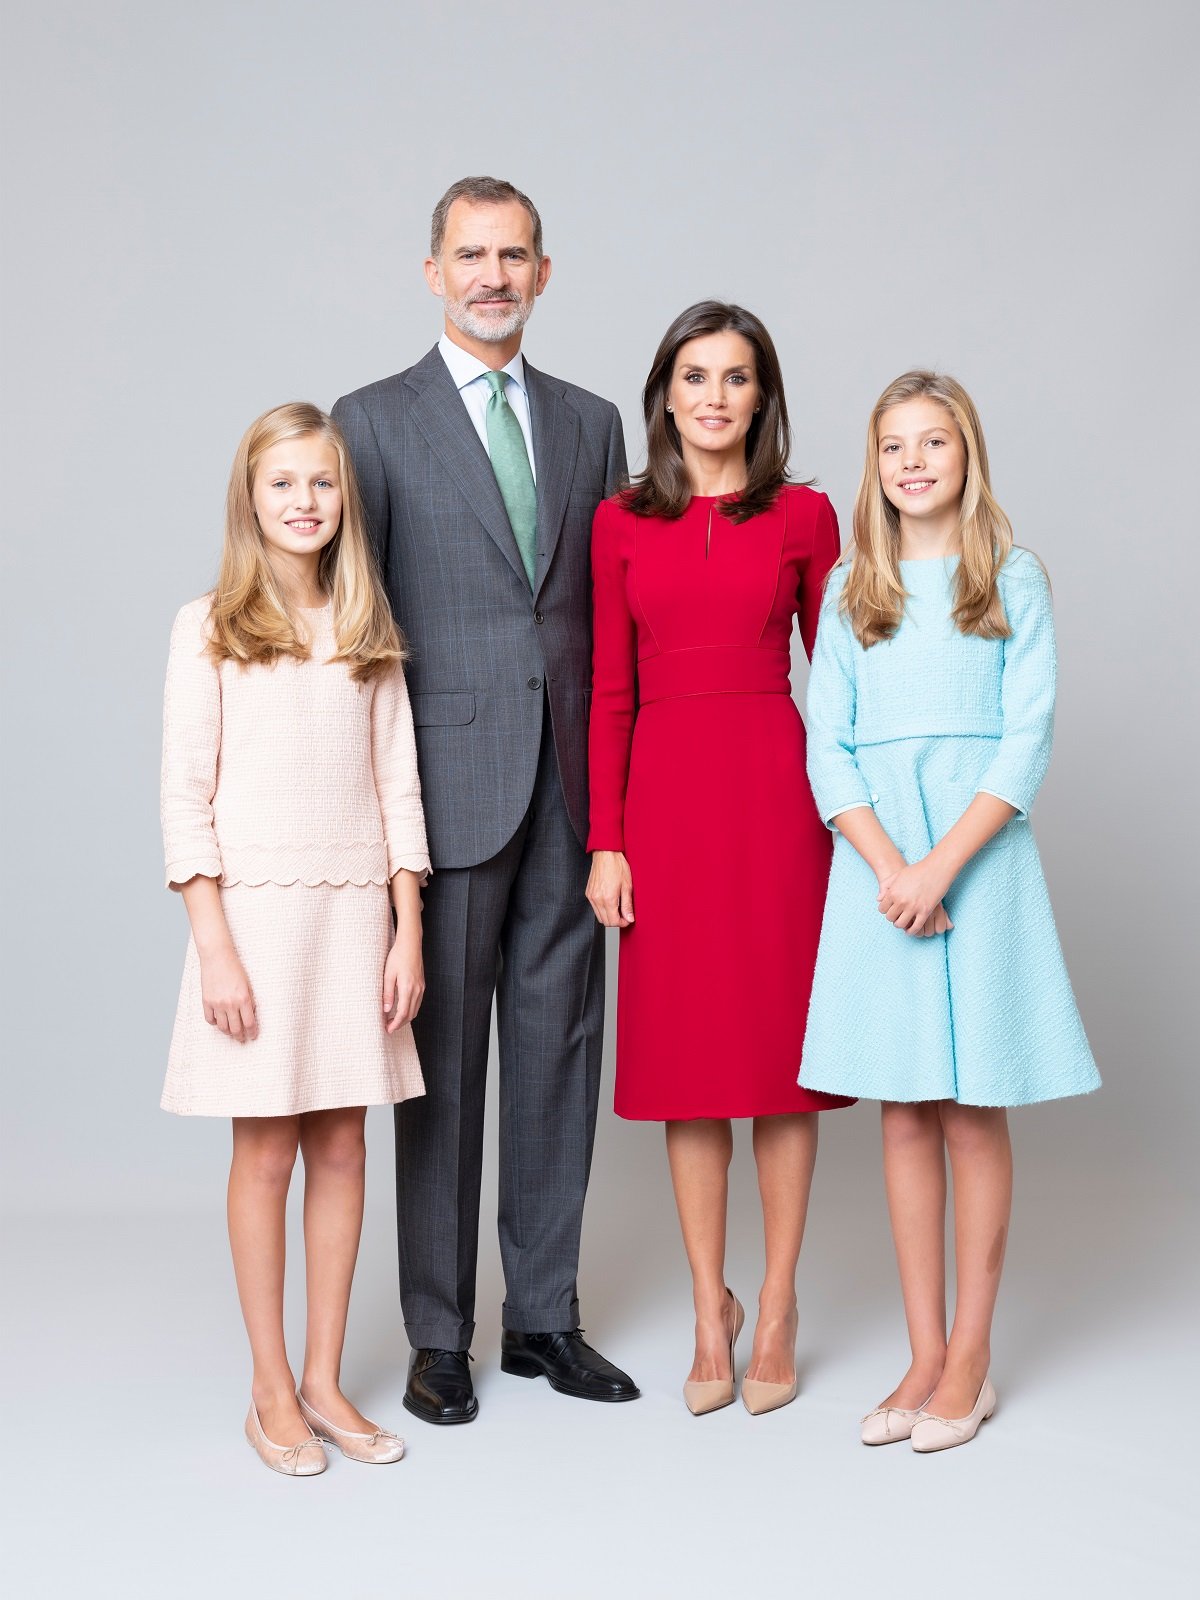 Fotografía oficial de la familia real, 20 de febrero de 2020. | Foto: Getty Images